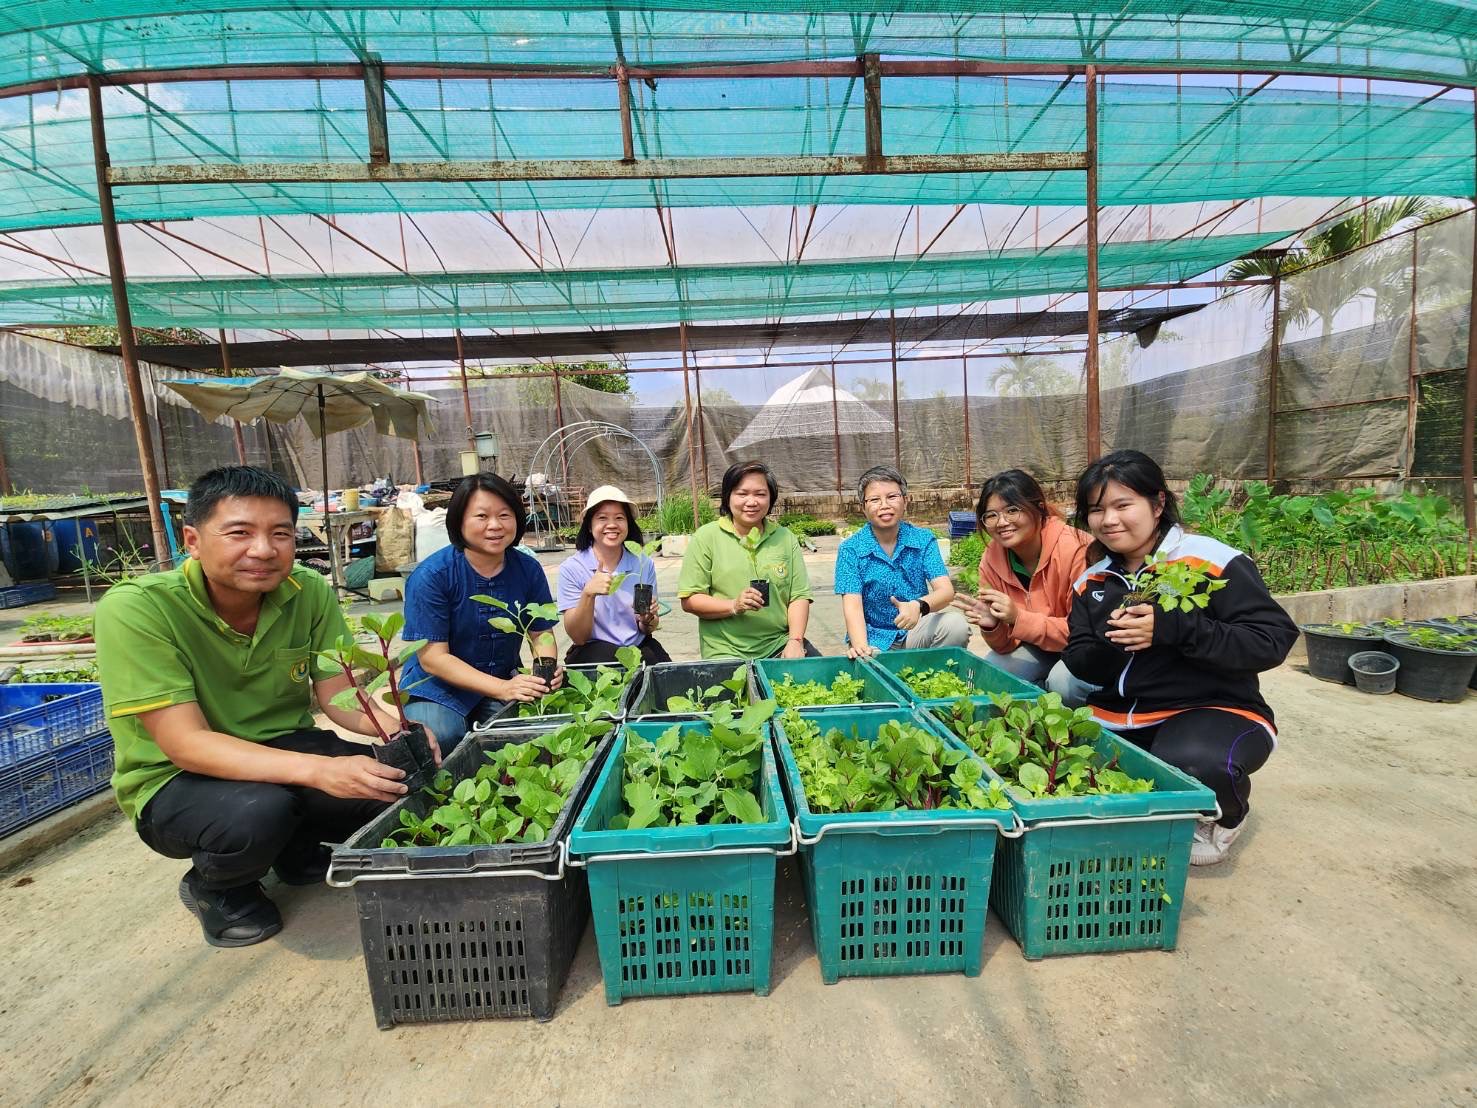 เกษตรลำพูน เตรียมกล้าพันธุ์พืชผักสวนครัว ออกหน่วยบริการประชาชนจังหวัดลำพูนเคลื่อนที่ 23 เมษายน 2567 ณ ศูนย์การเรียนรู้เศรษฐกิจพอเพียง (หนองปลิง) เทศบาลตำบลวังผาง อำเภอเวียงหนองล่อง จังหวัดลำพูน